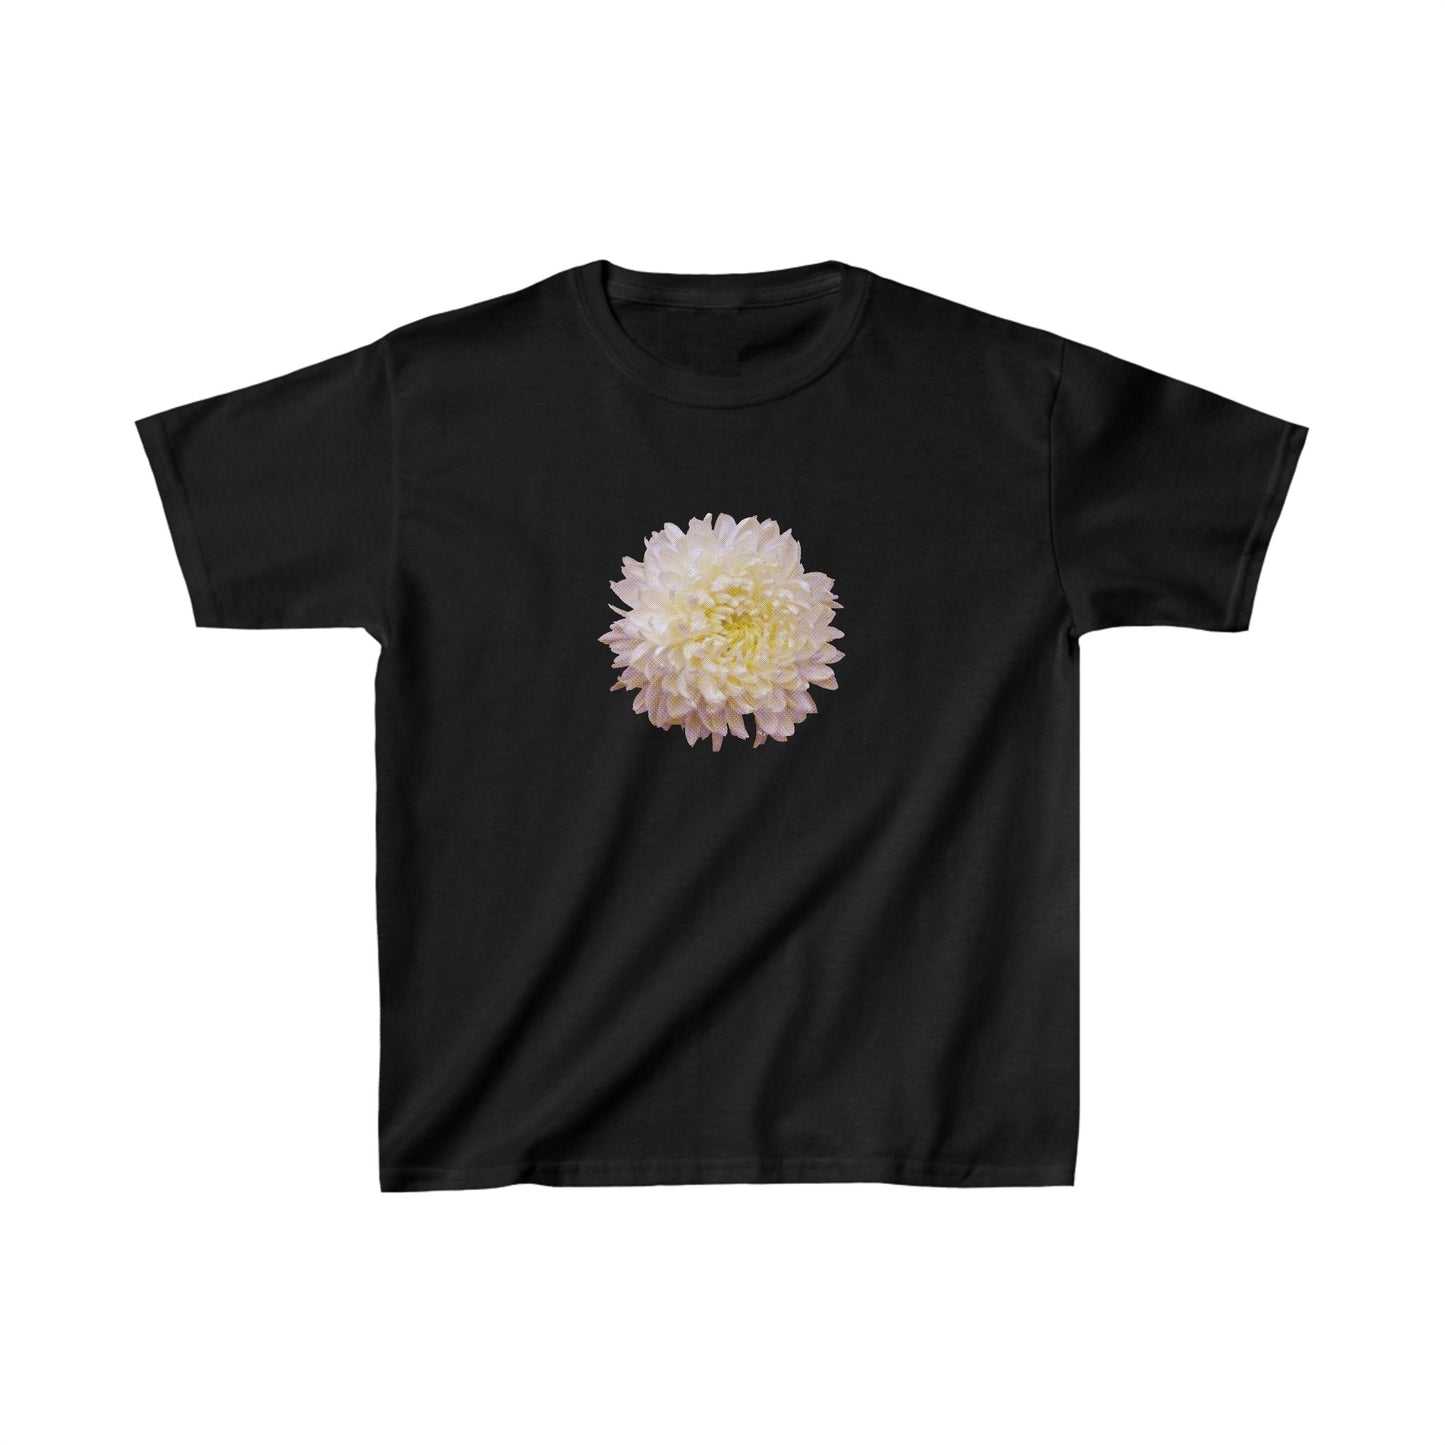 "Chrysanthemum" Baby Tee